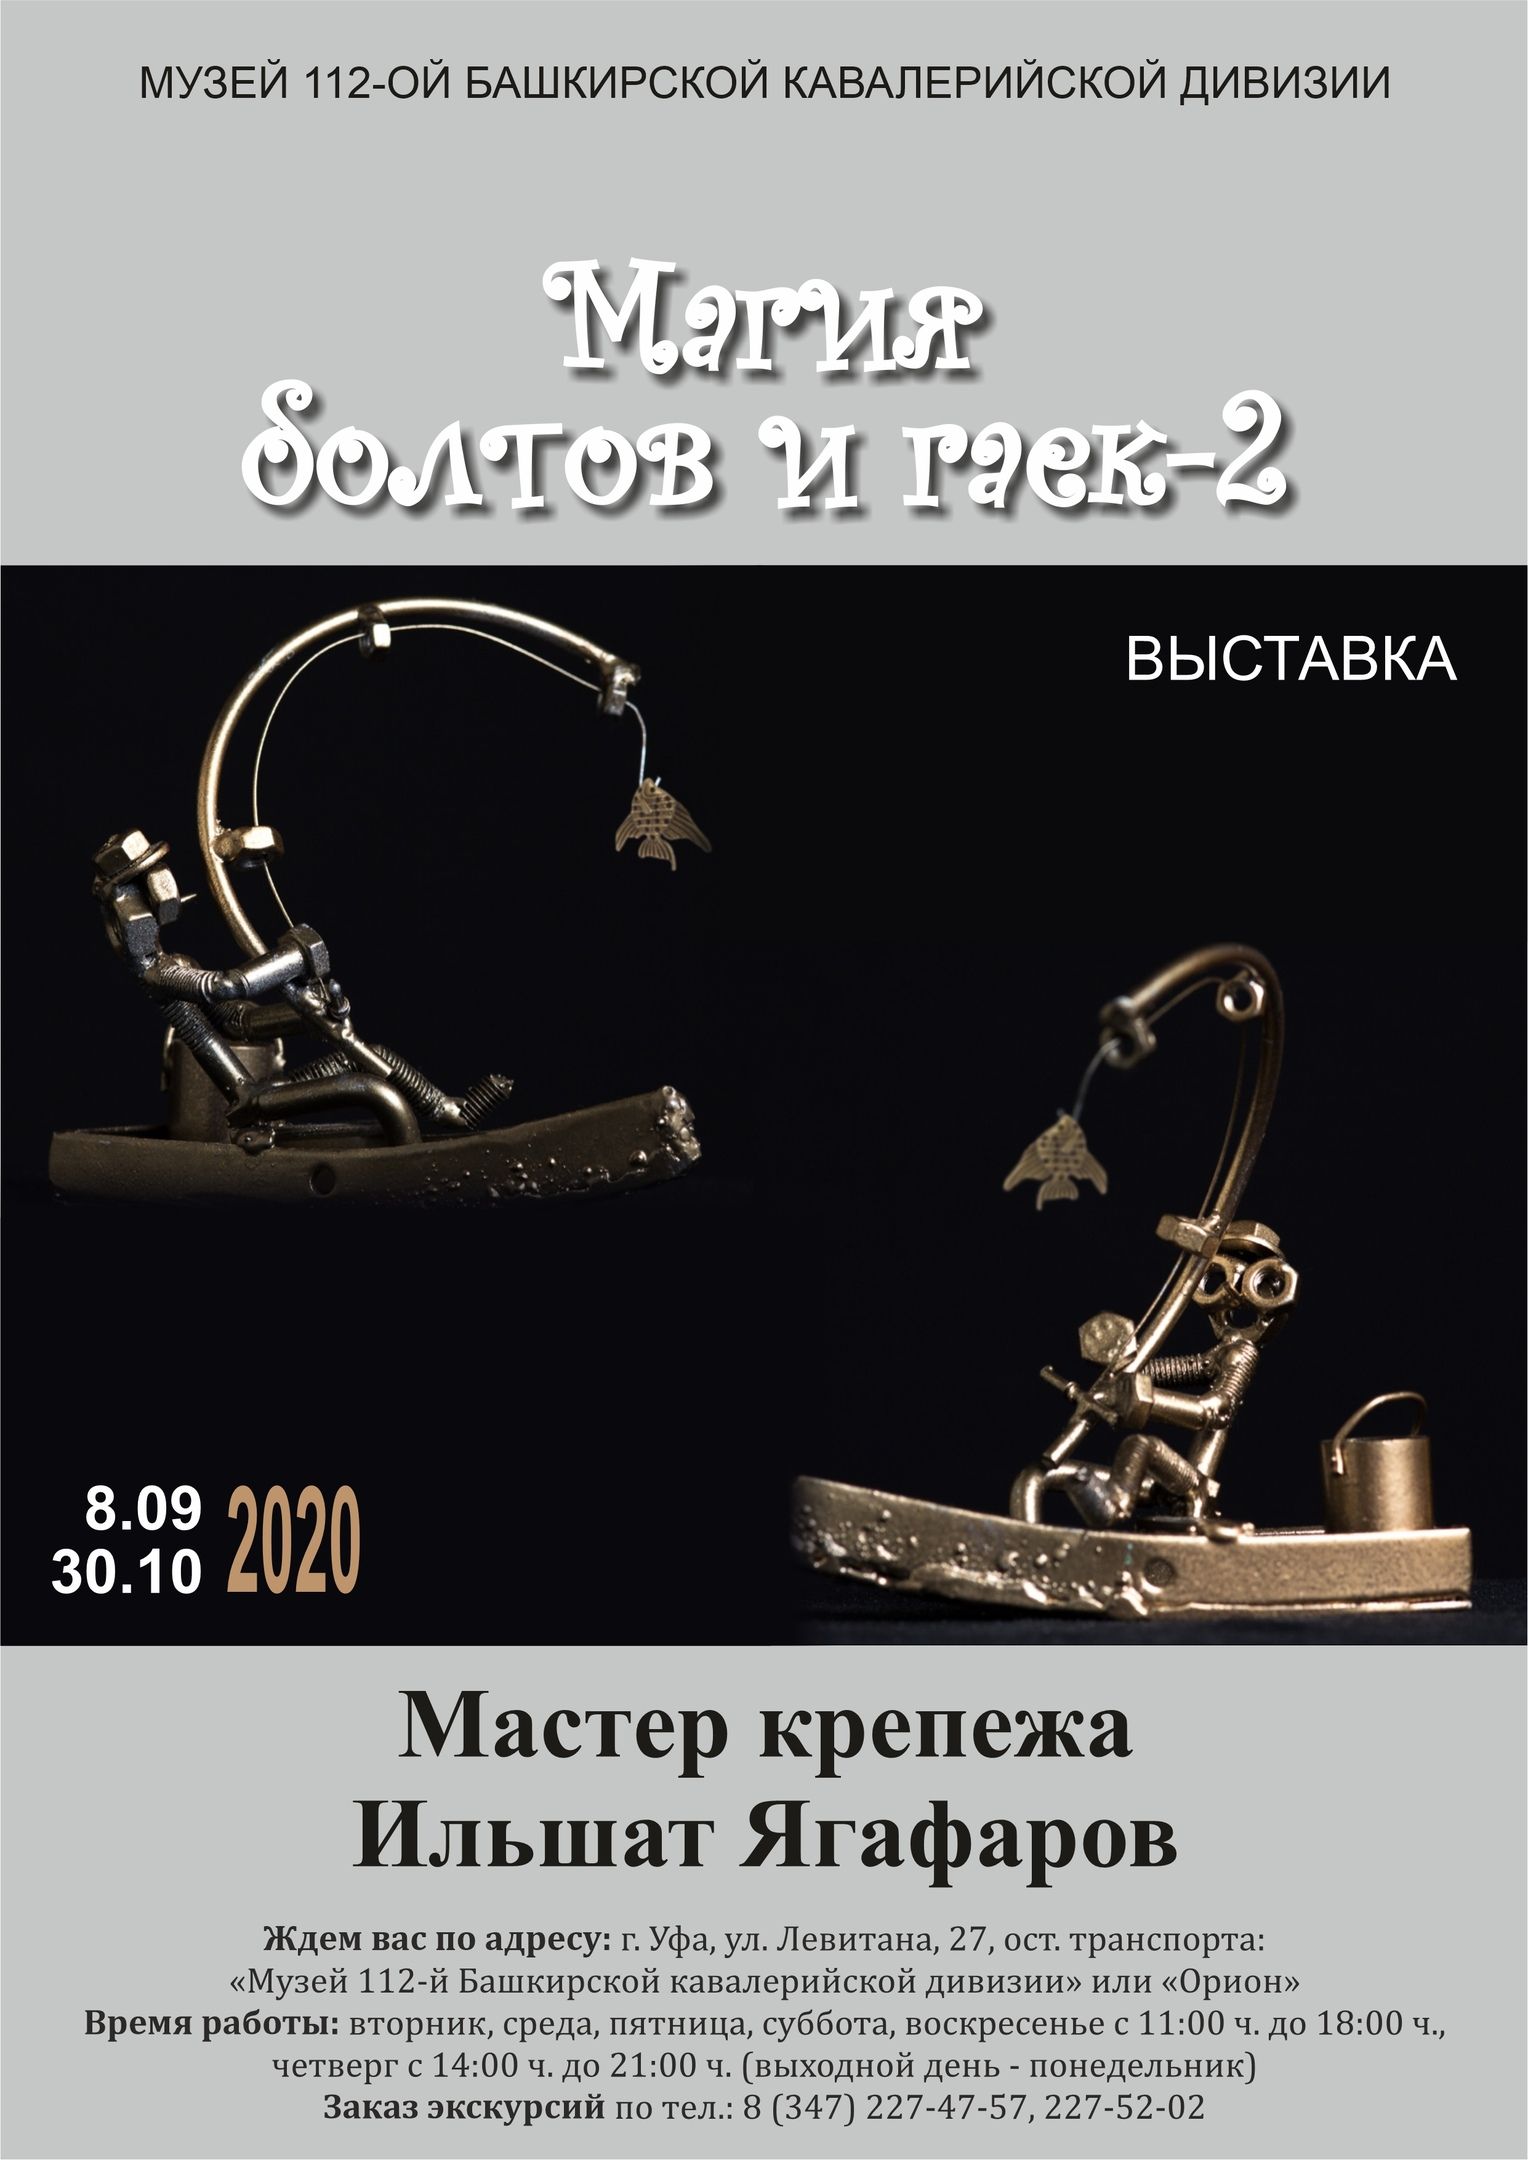 В Музее 112-й Башкирской кавалерийской дивизии проходит выставка Ильшата Ягафарова «Магия болтов и гаек – 2»